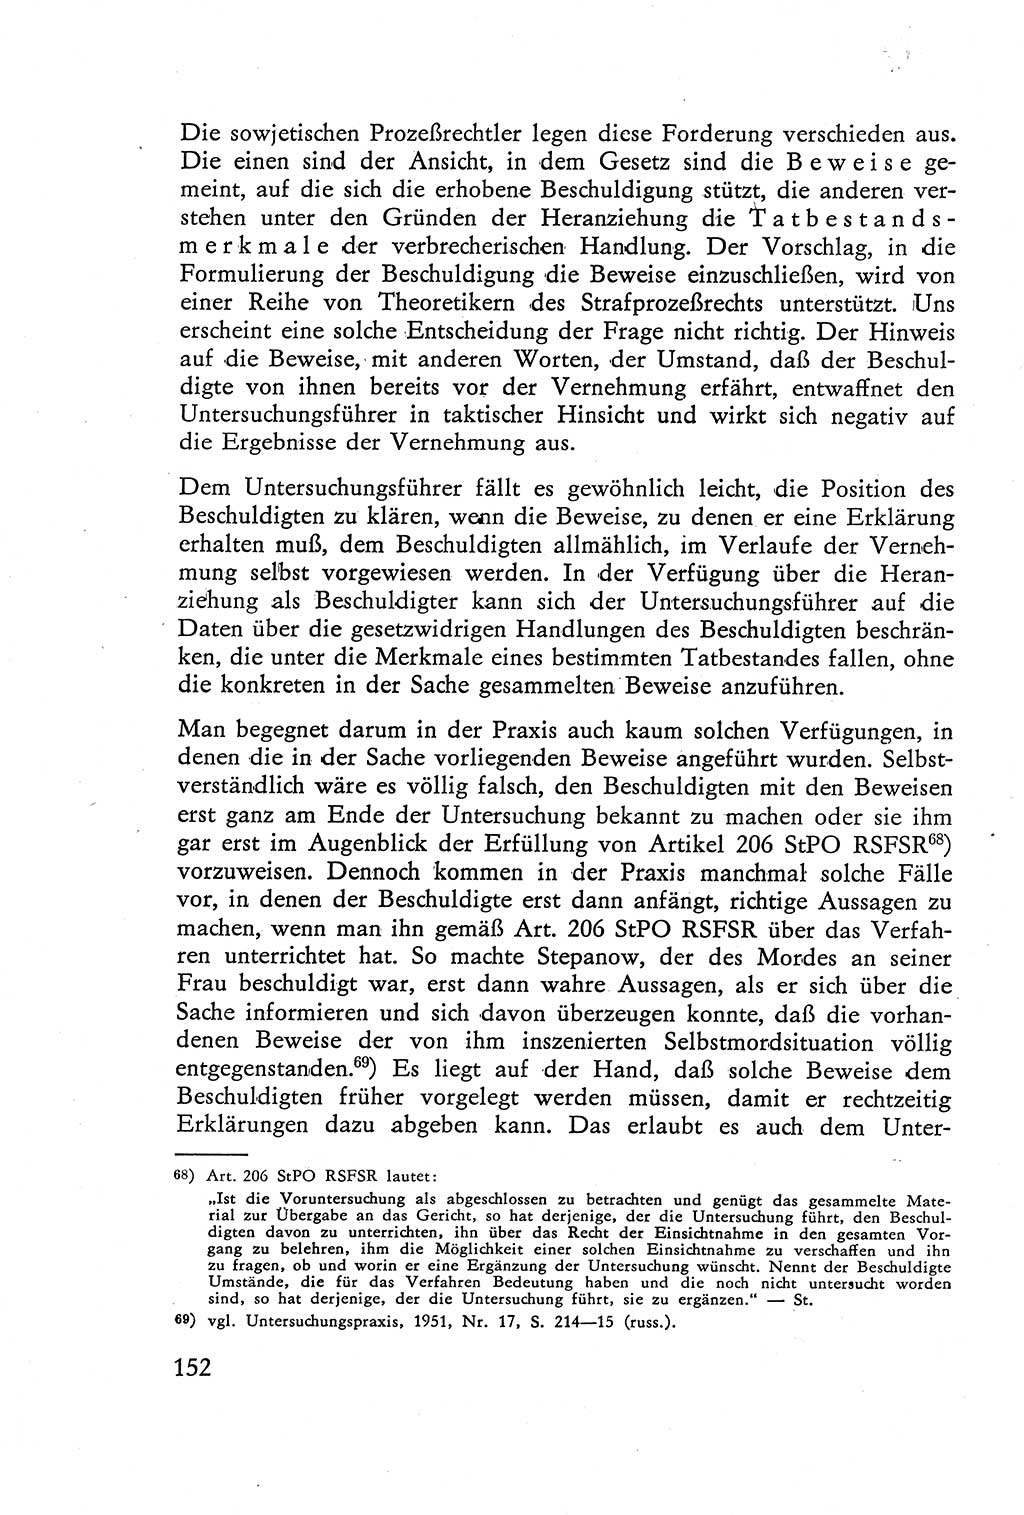 Die Vernehmung [Deutsche Demokratische Republik (DDR)] 1960, Seite 152 (Vern. DDR 1960, S. 152)